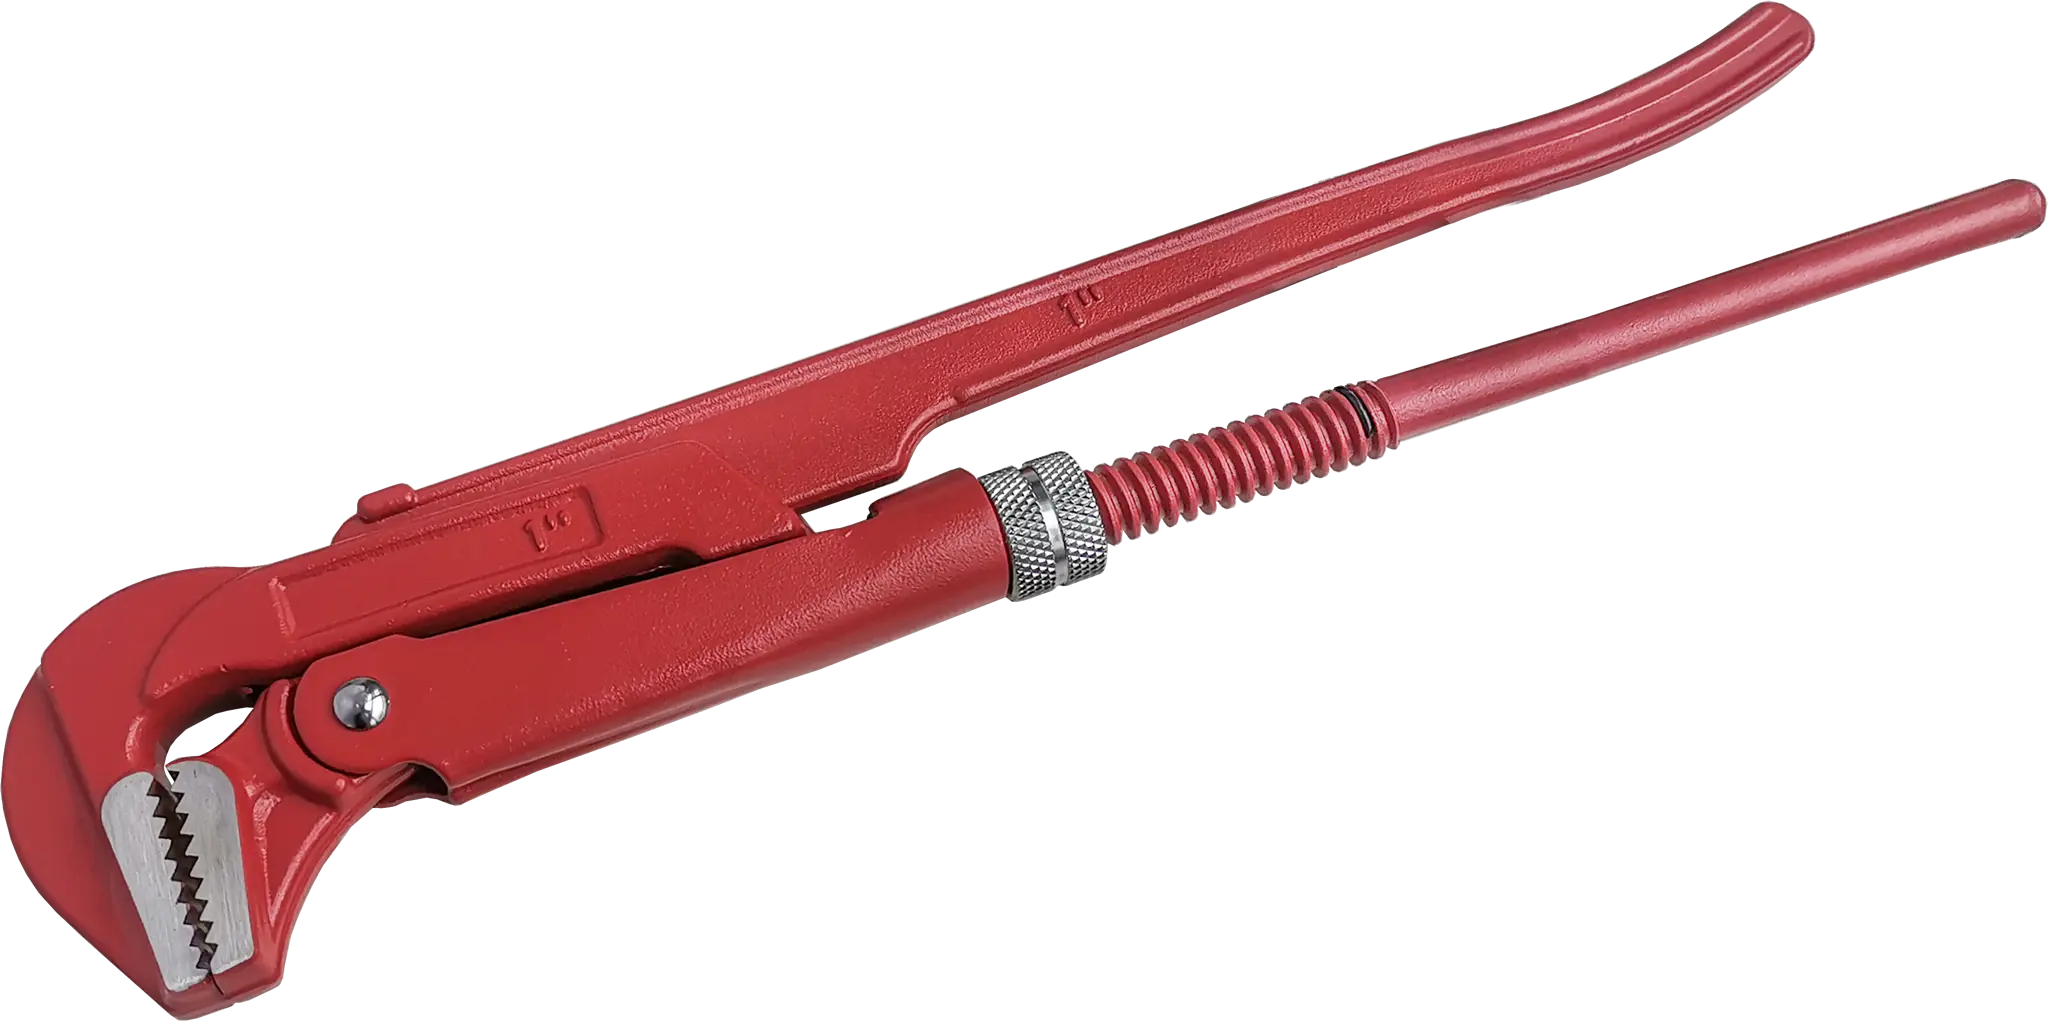 Ключ трубный газовый рычажный КТР-1 захват 25 мм, длина 320 мм трубный глухой метчик русский инструмент